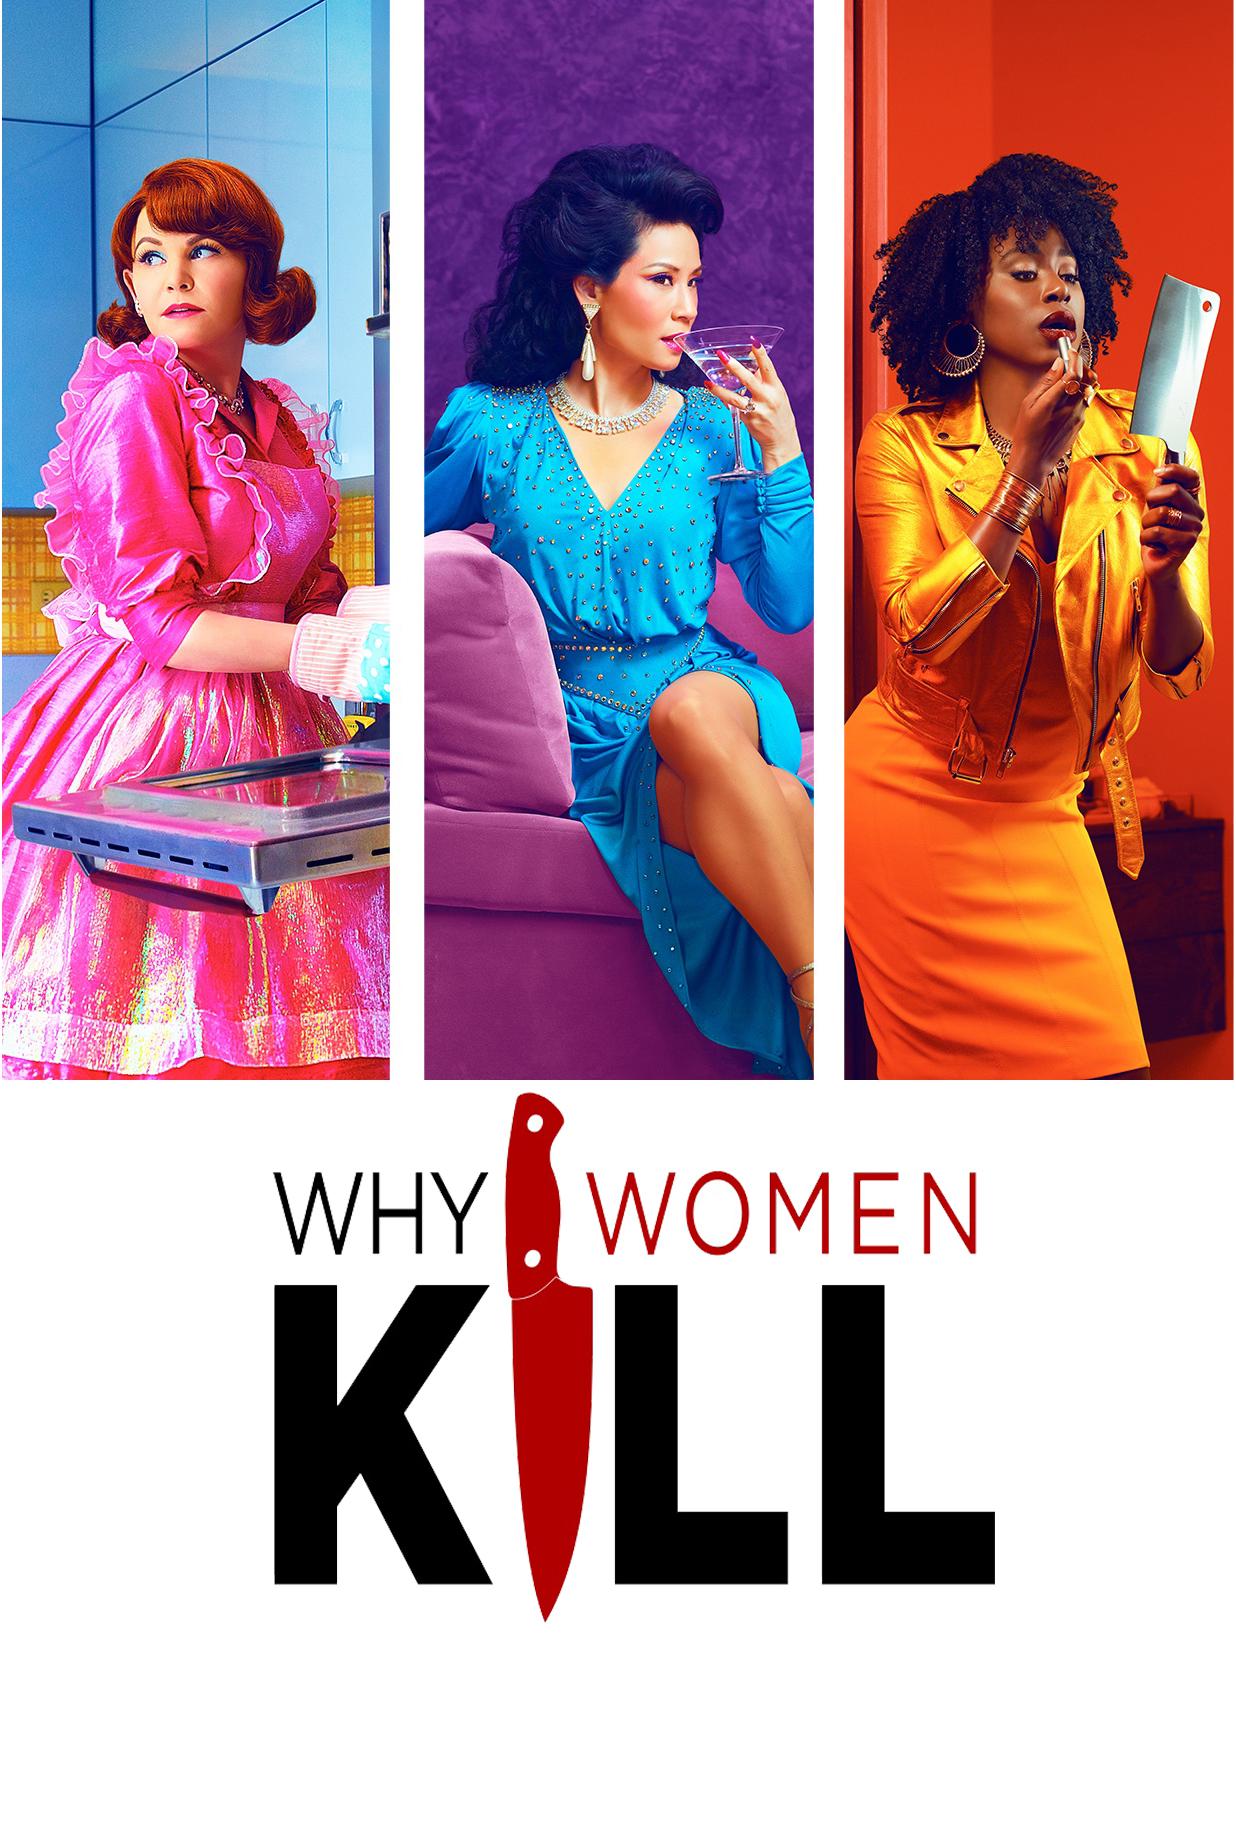 WHY WOMEN KILL